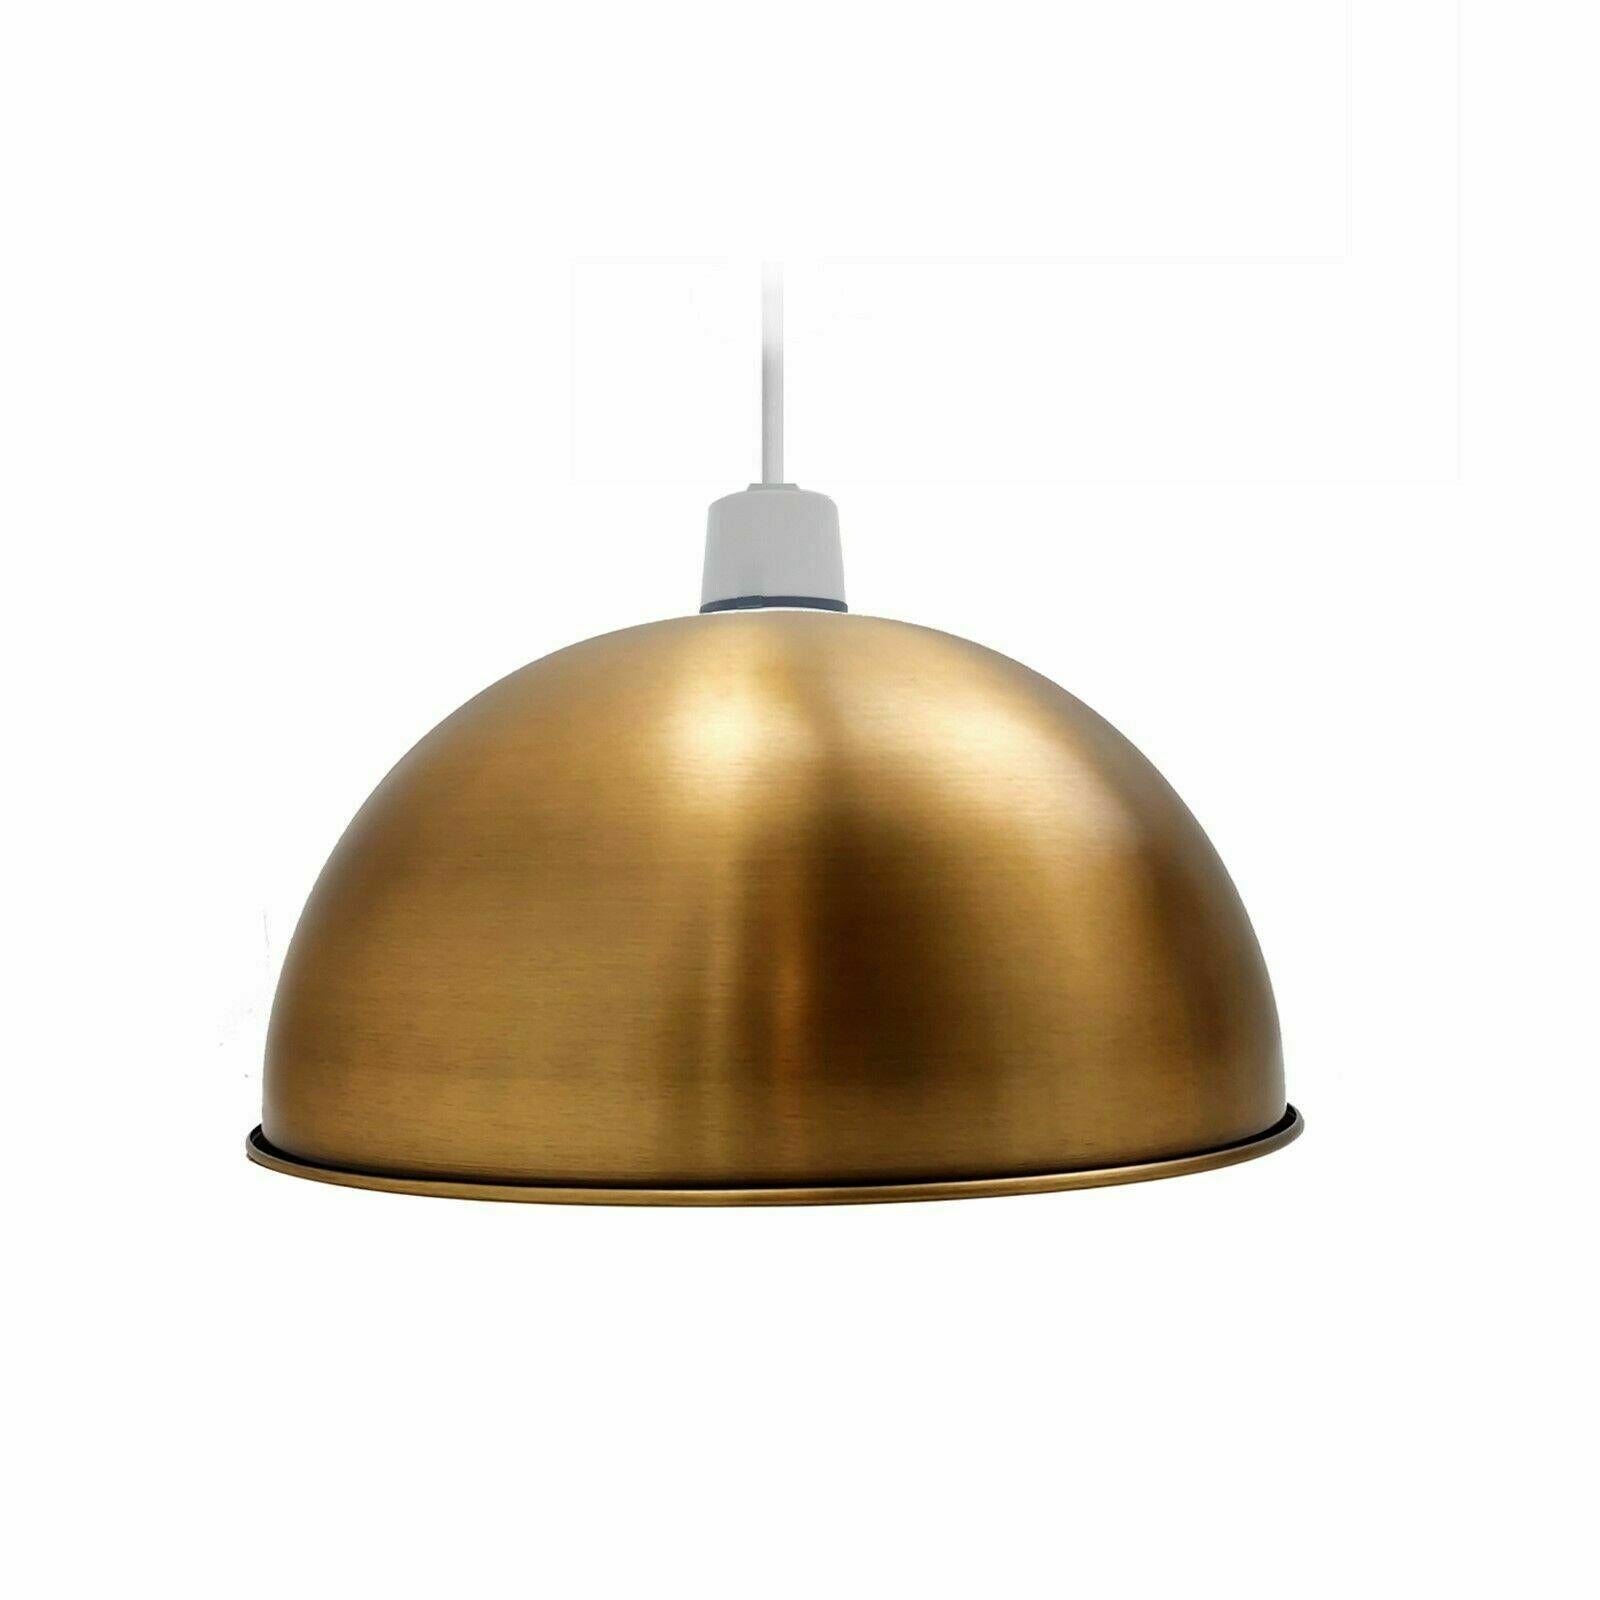 brass lamp shade